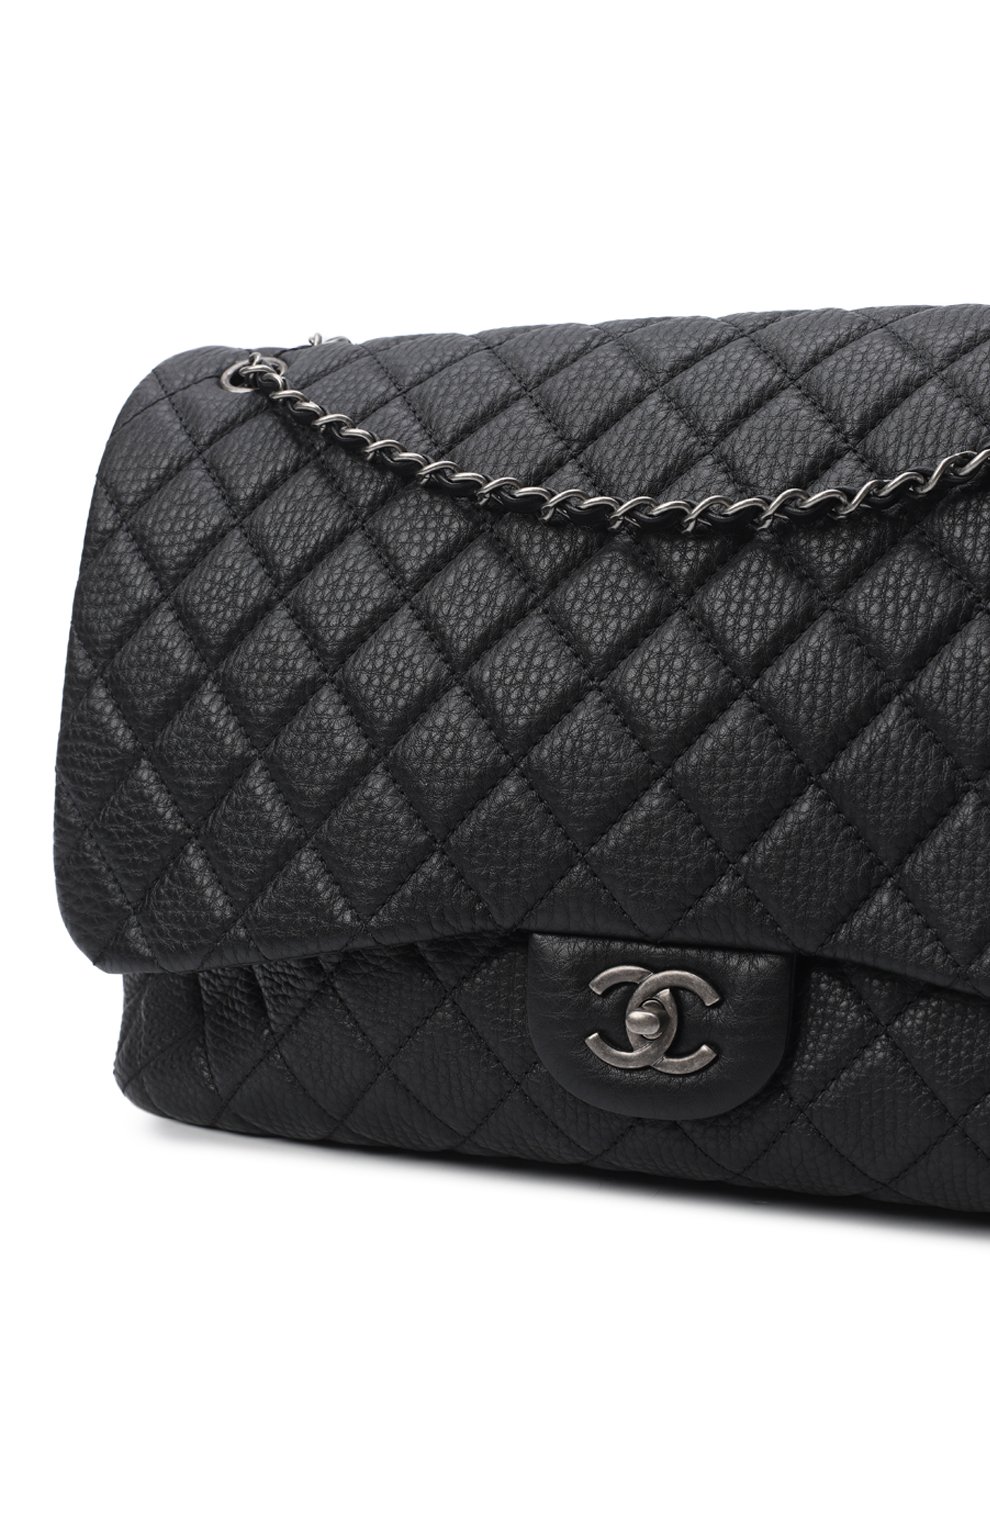 Сумка XXL Classic Bag | Chanel | Чёрный - 6